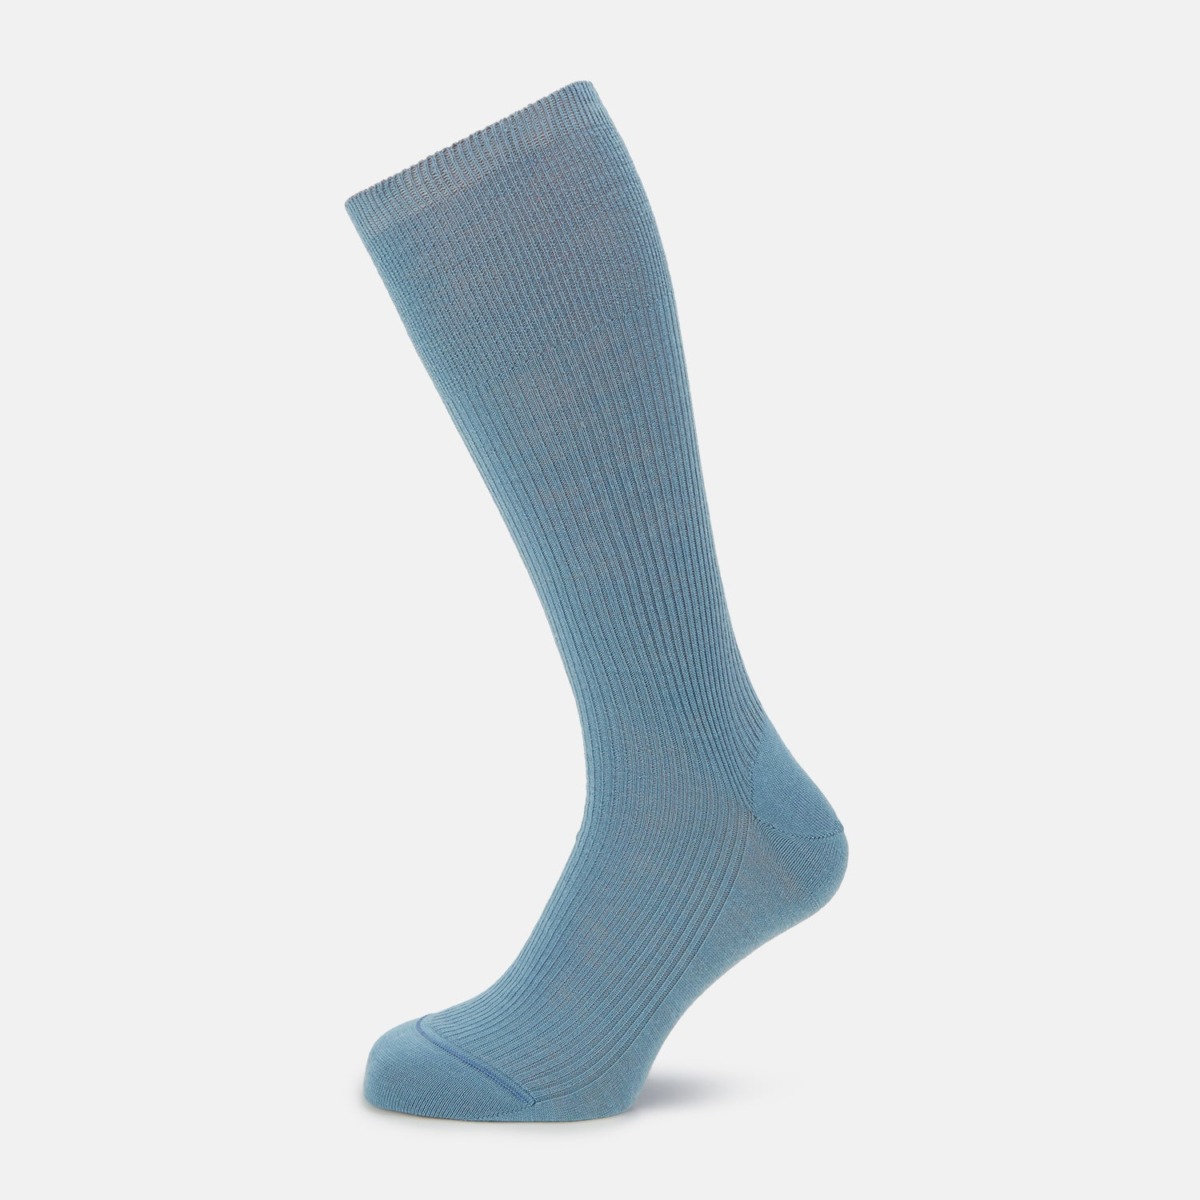 Turnbull & Asser - Men's Socks in Blue Turnbull And Asser GOOFASH